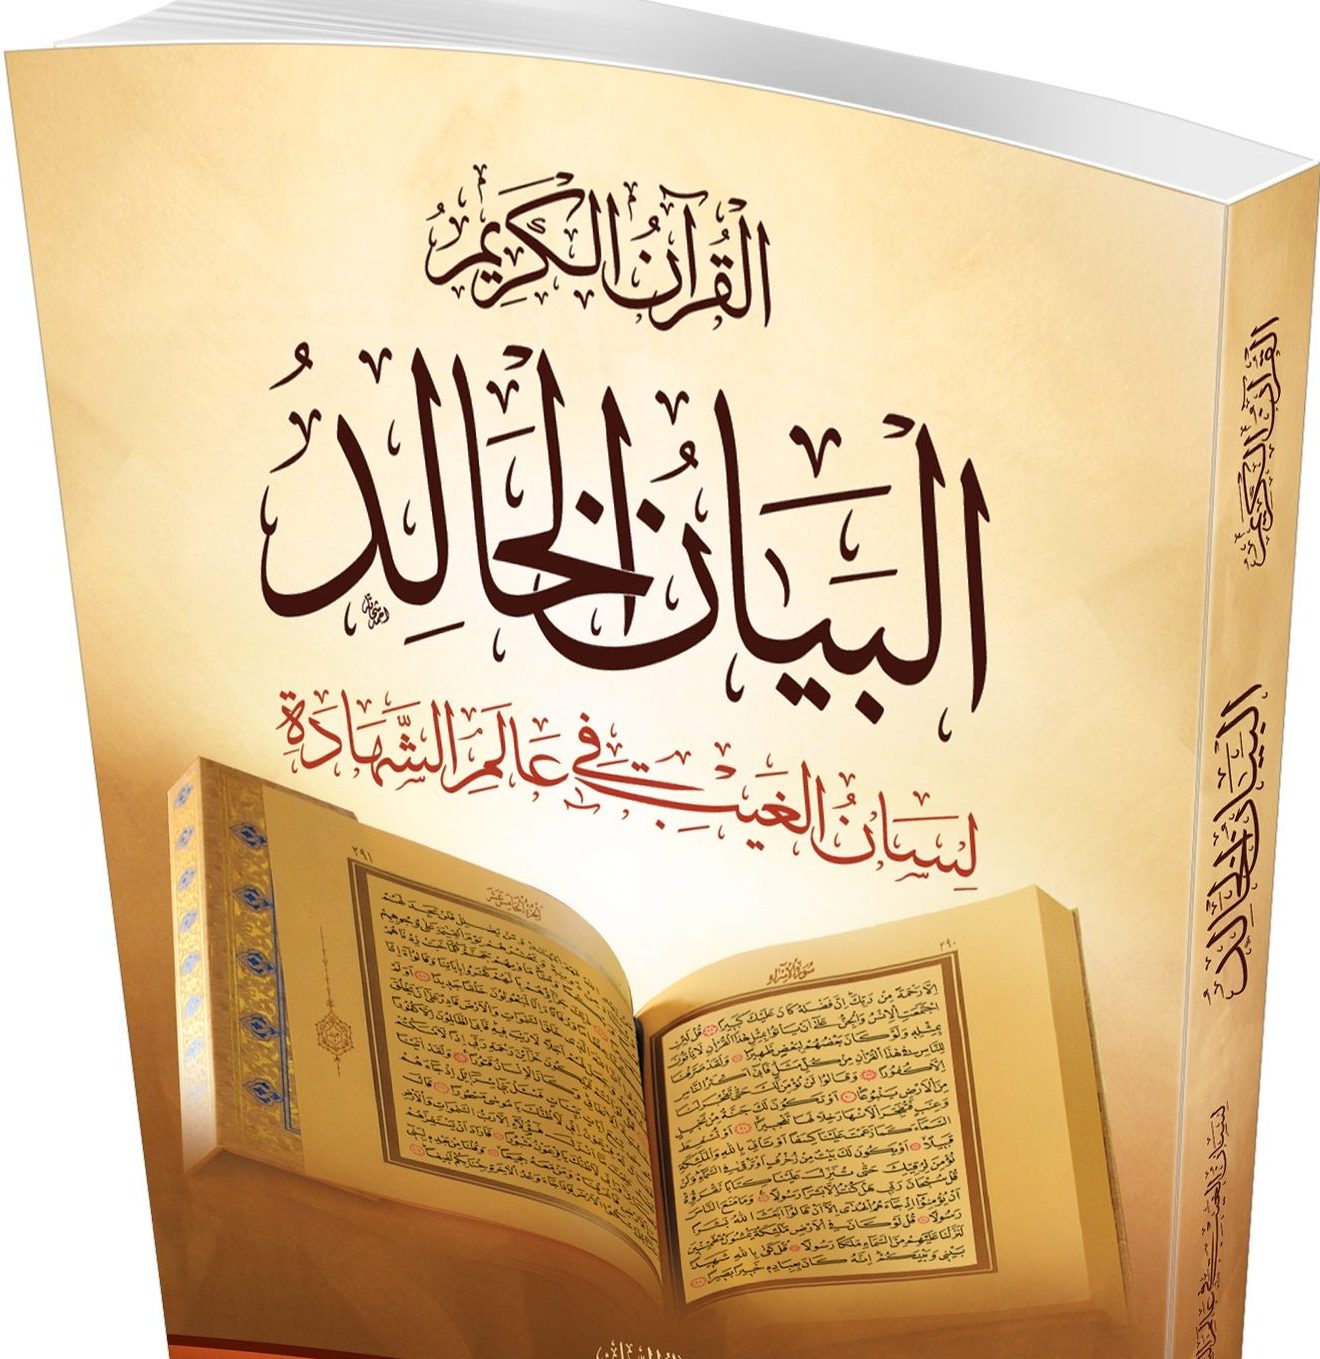 الفصل الرابع القرآن وأسلوبه الفريد موقع الأستاذ فتح الله كولن